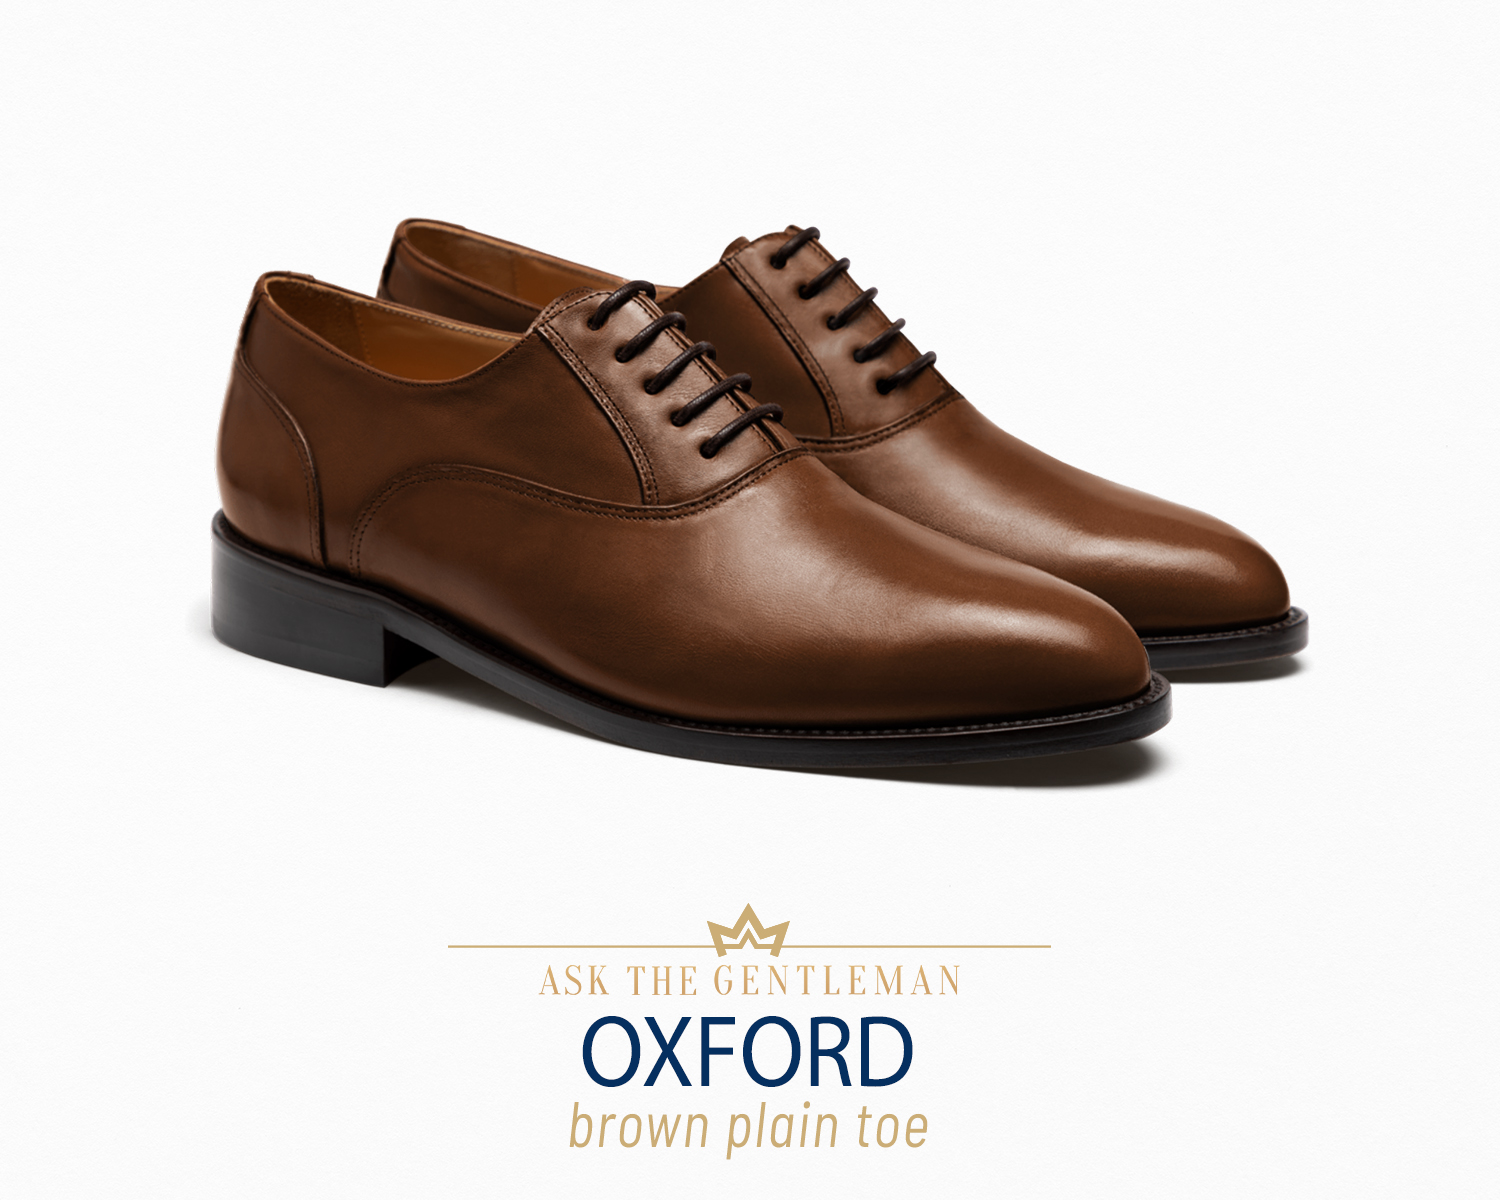 Brown Oxford dress shoe type